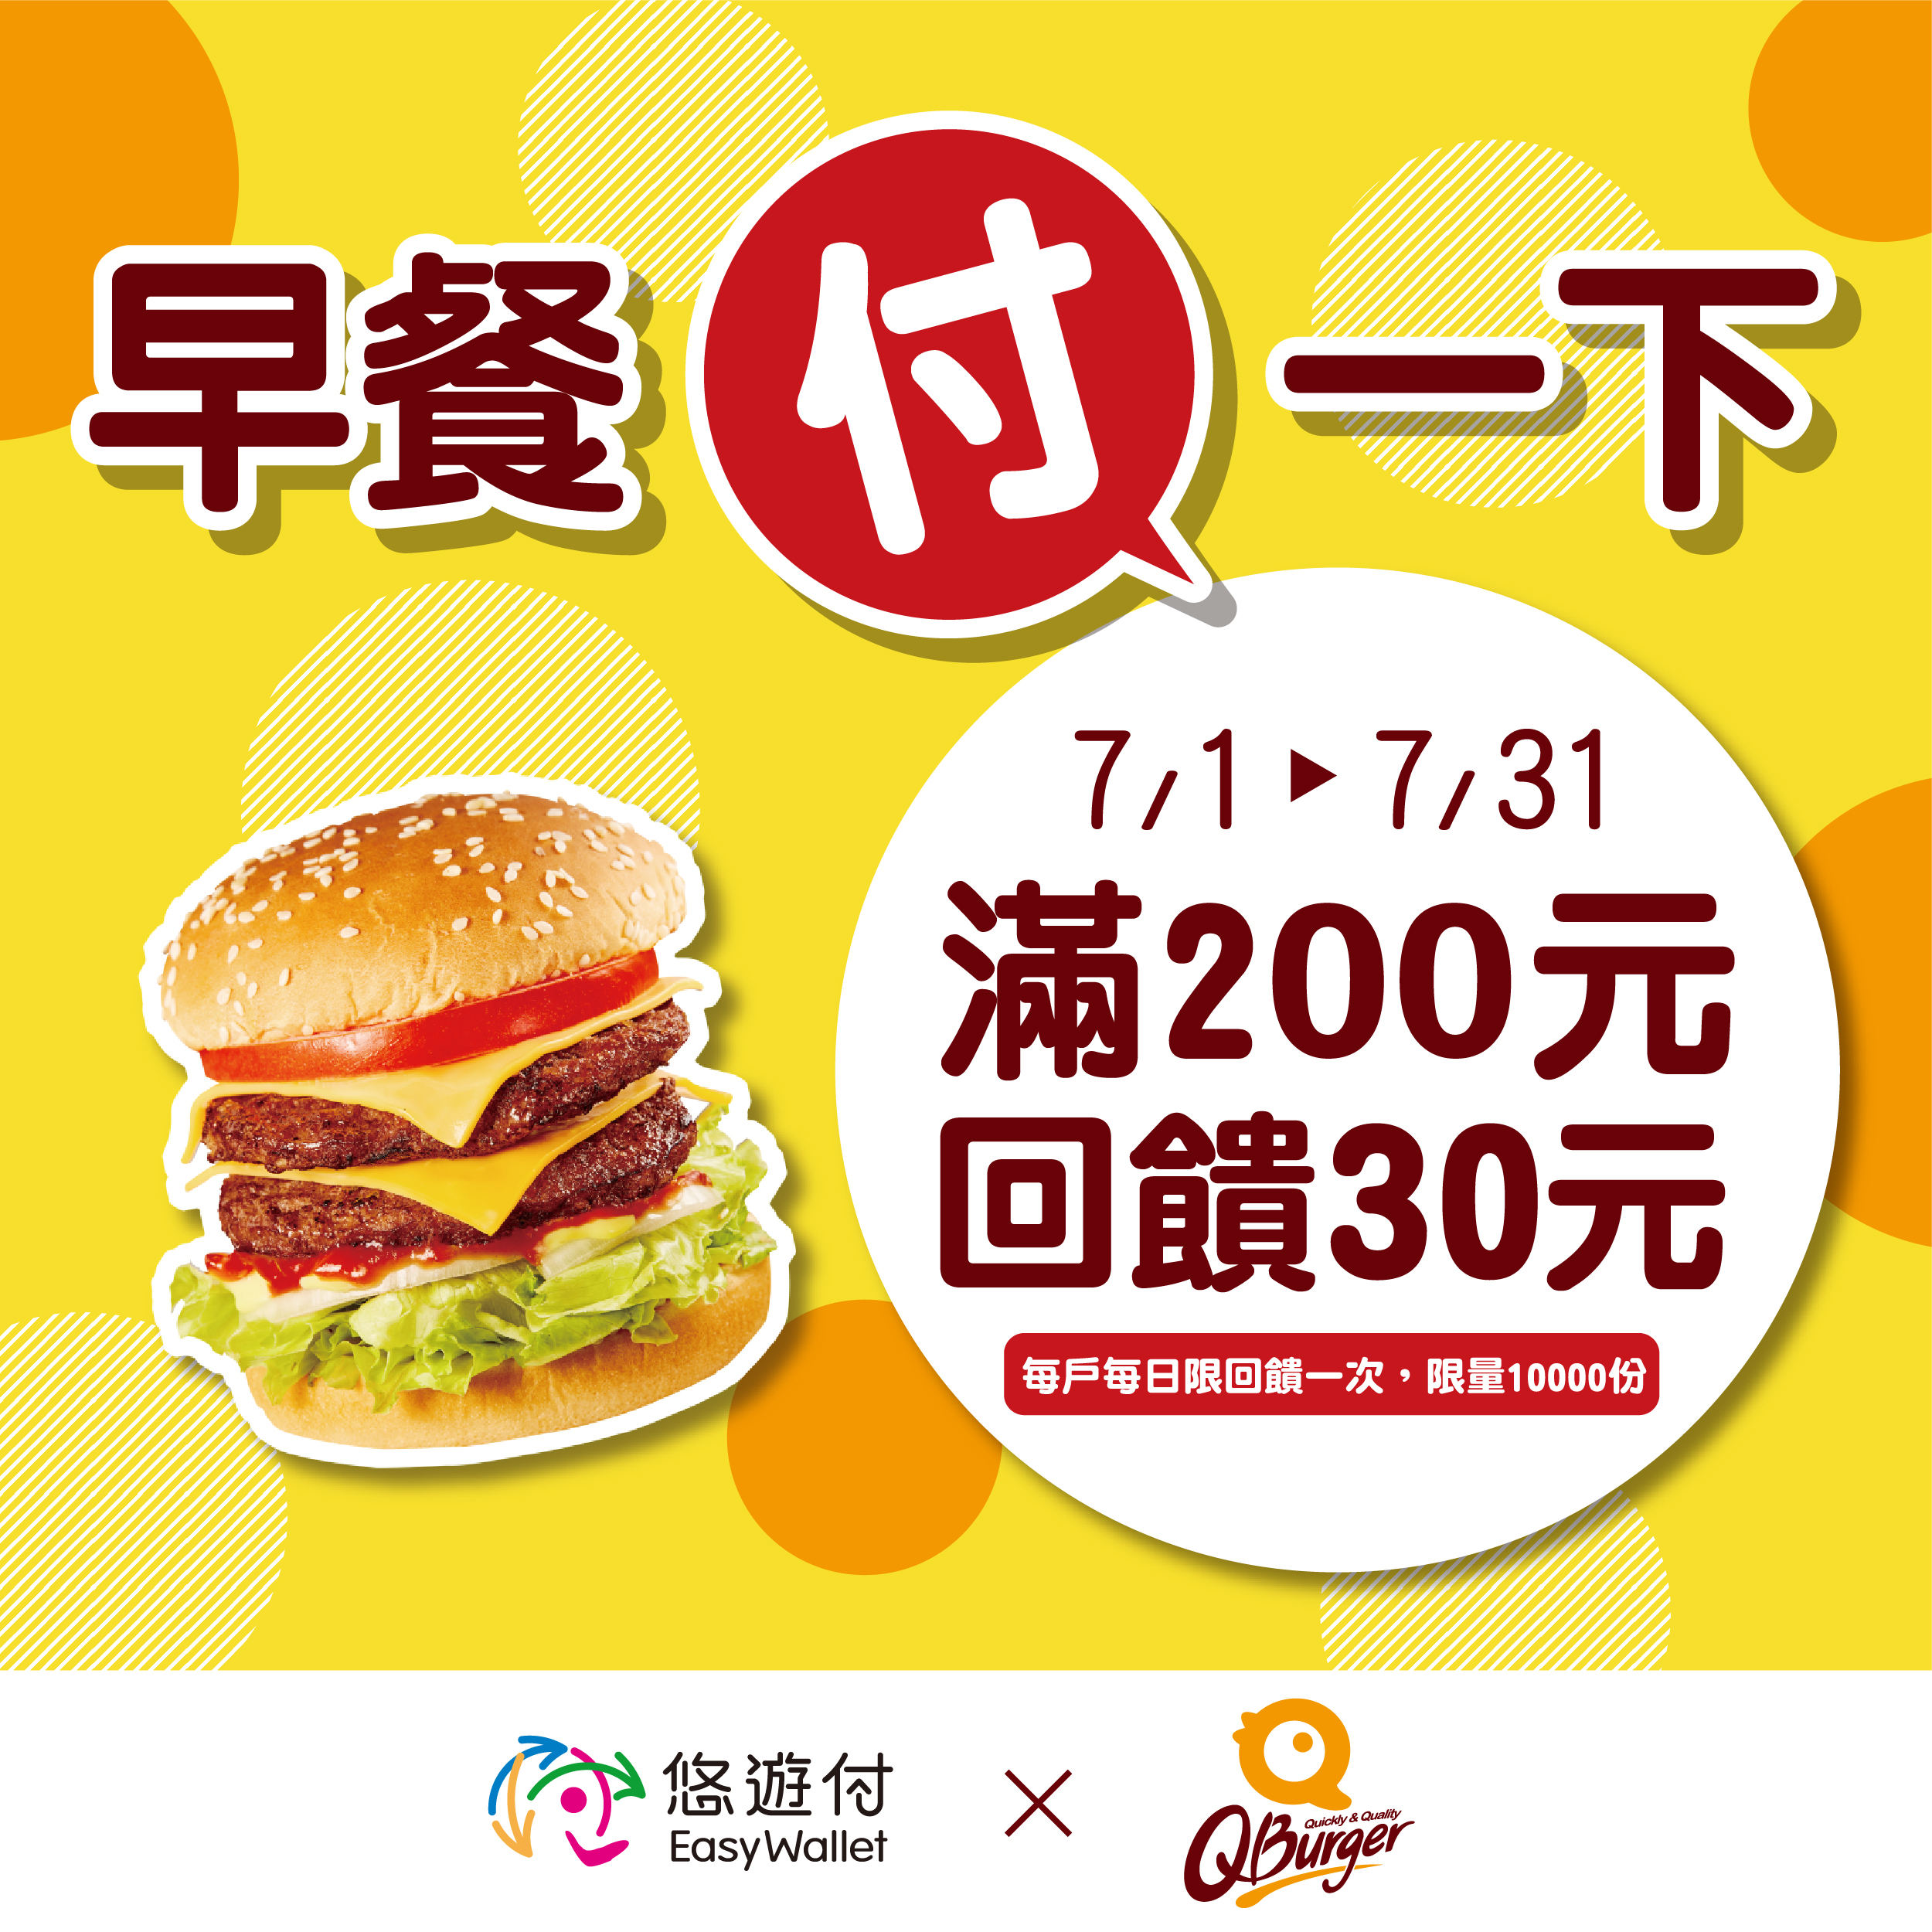 【期間限定】Q Burger x 悠遊付 滿$200回饋$30